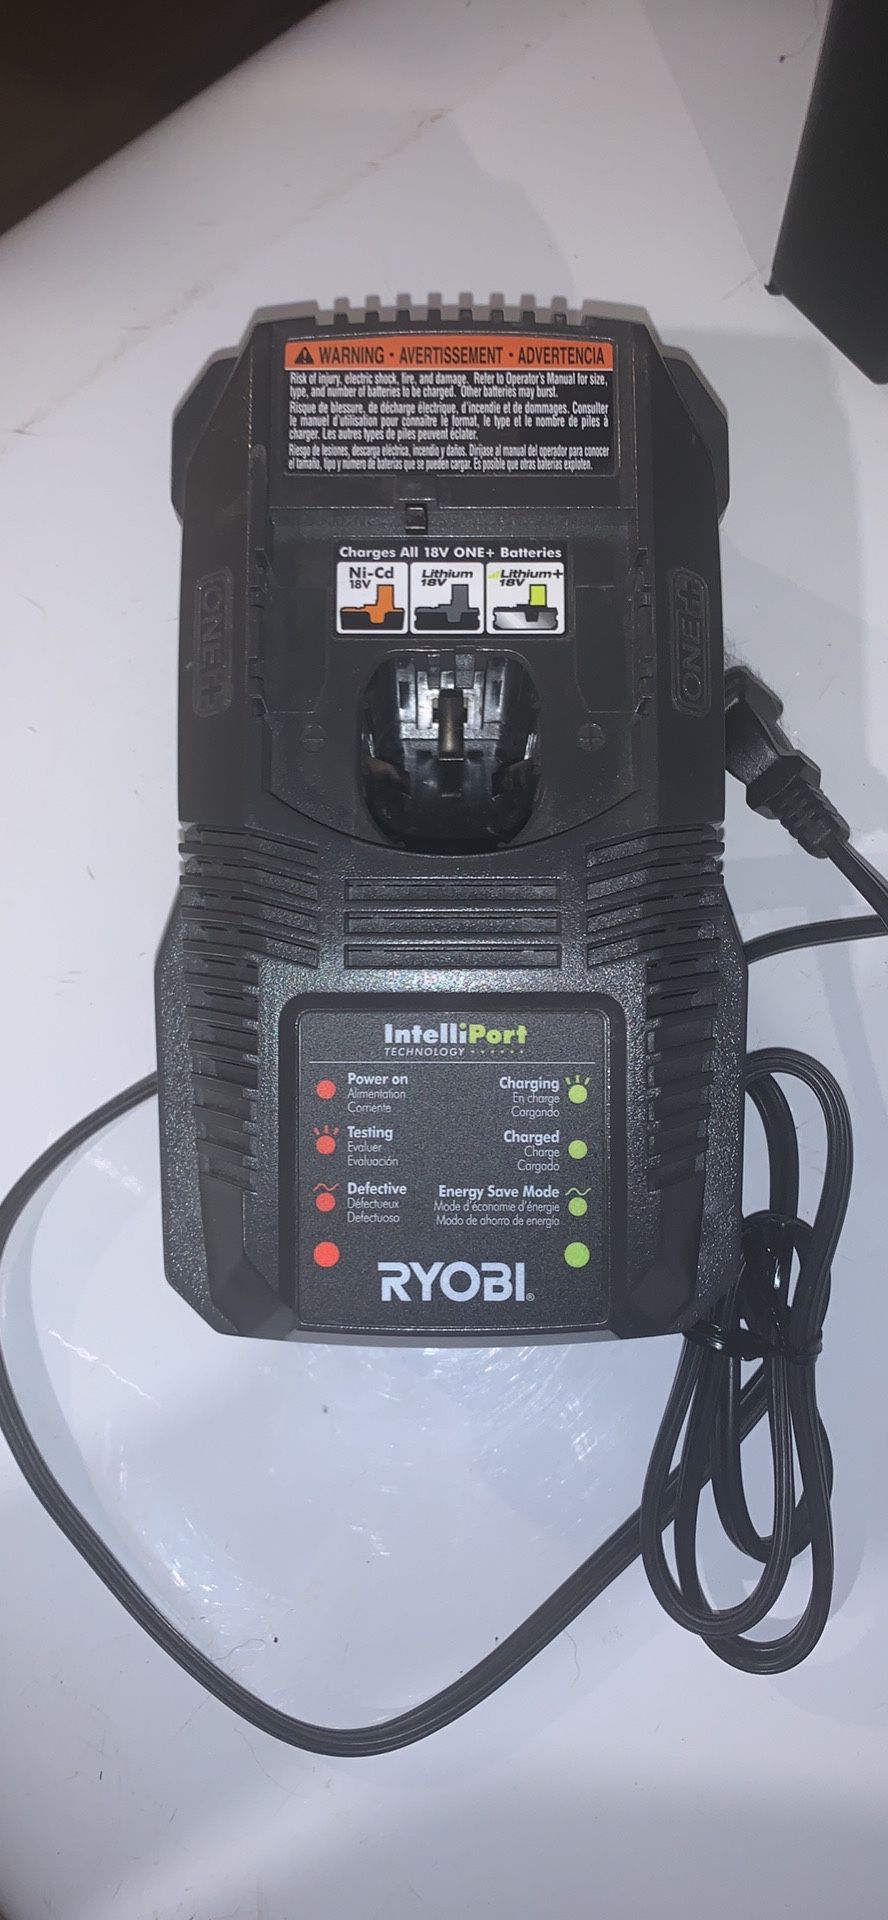 RYOBI 18V battery charger